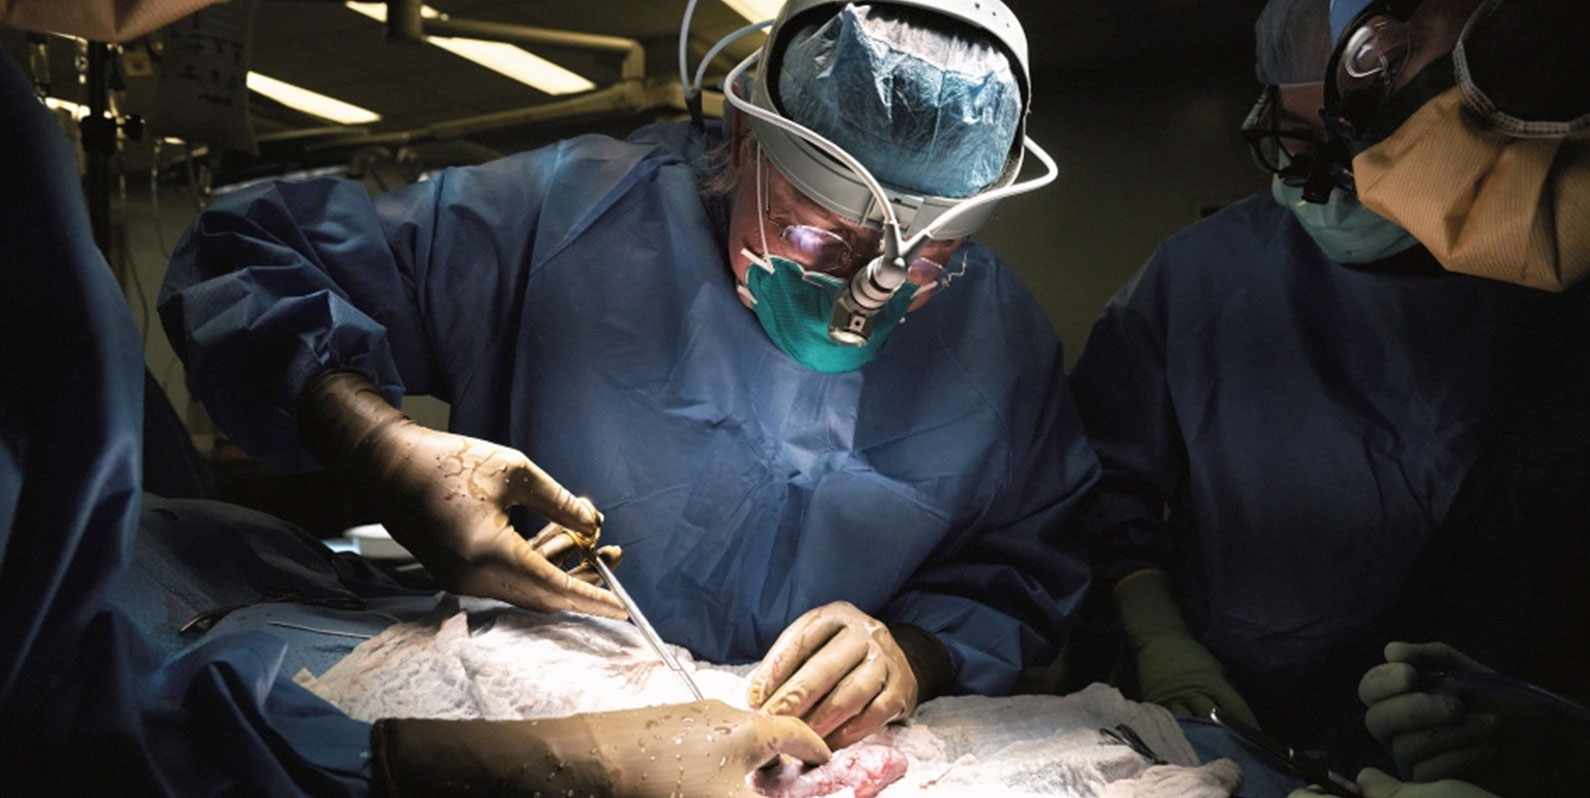 Cirurgiões testaram com sucesso o rim de um porco em um paciente humano